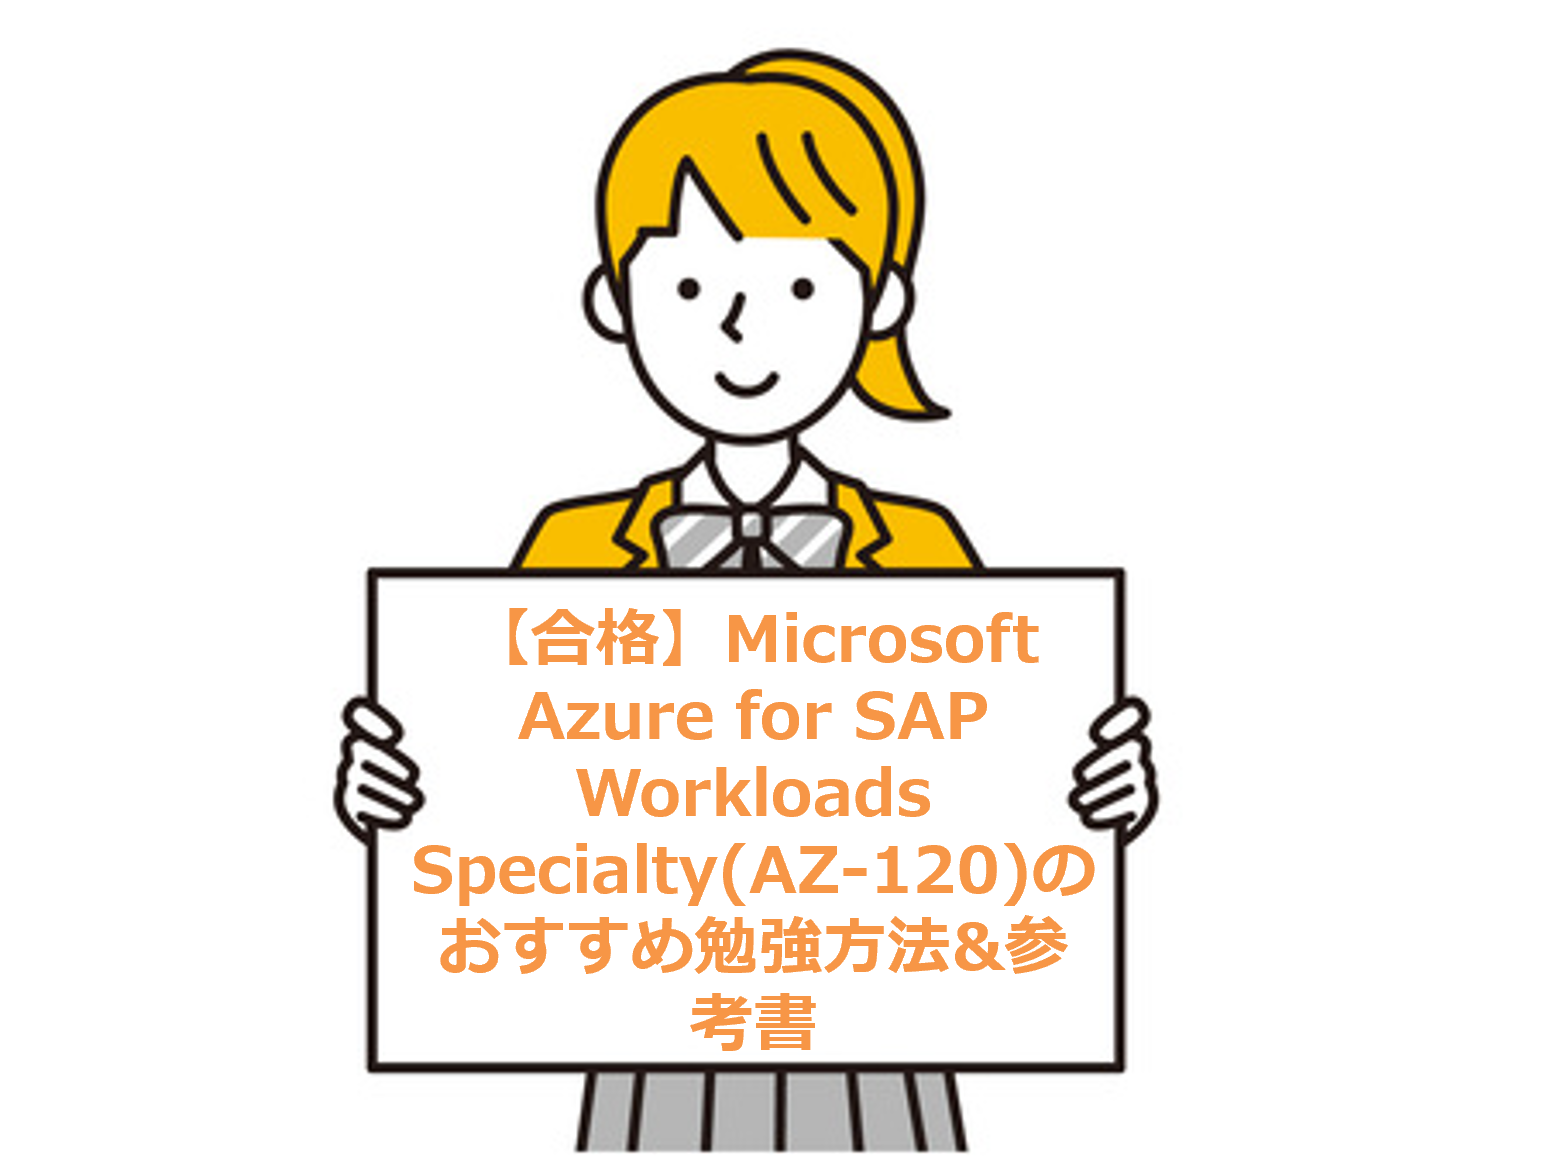 【合格】Microsoft Azure for SAP Workloads Specialty(AZ-120)のおすすめ勉強方法&参考書